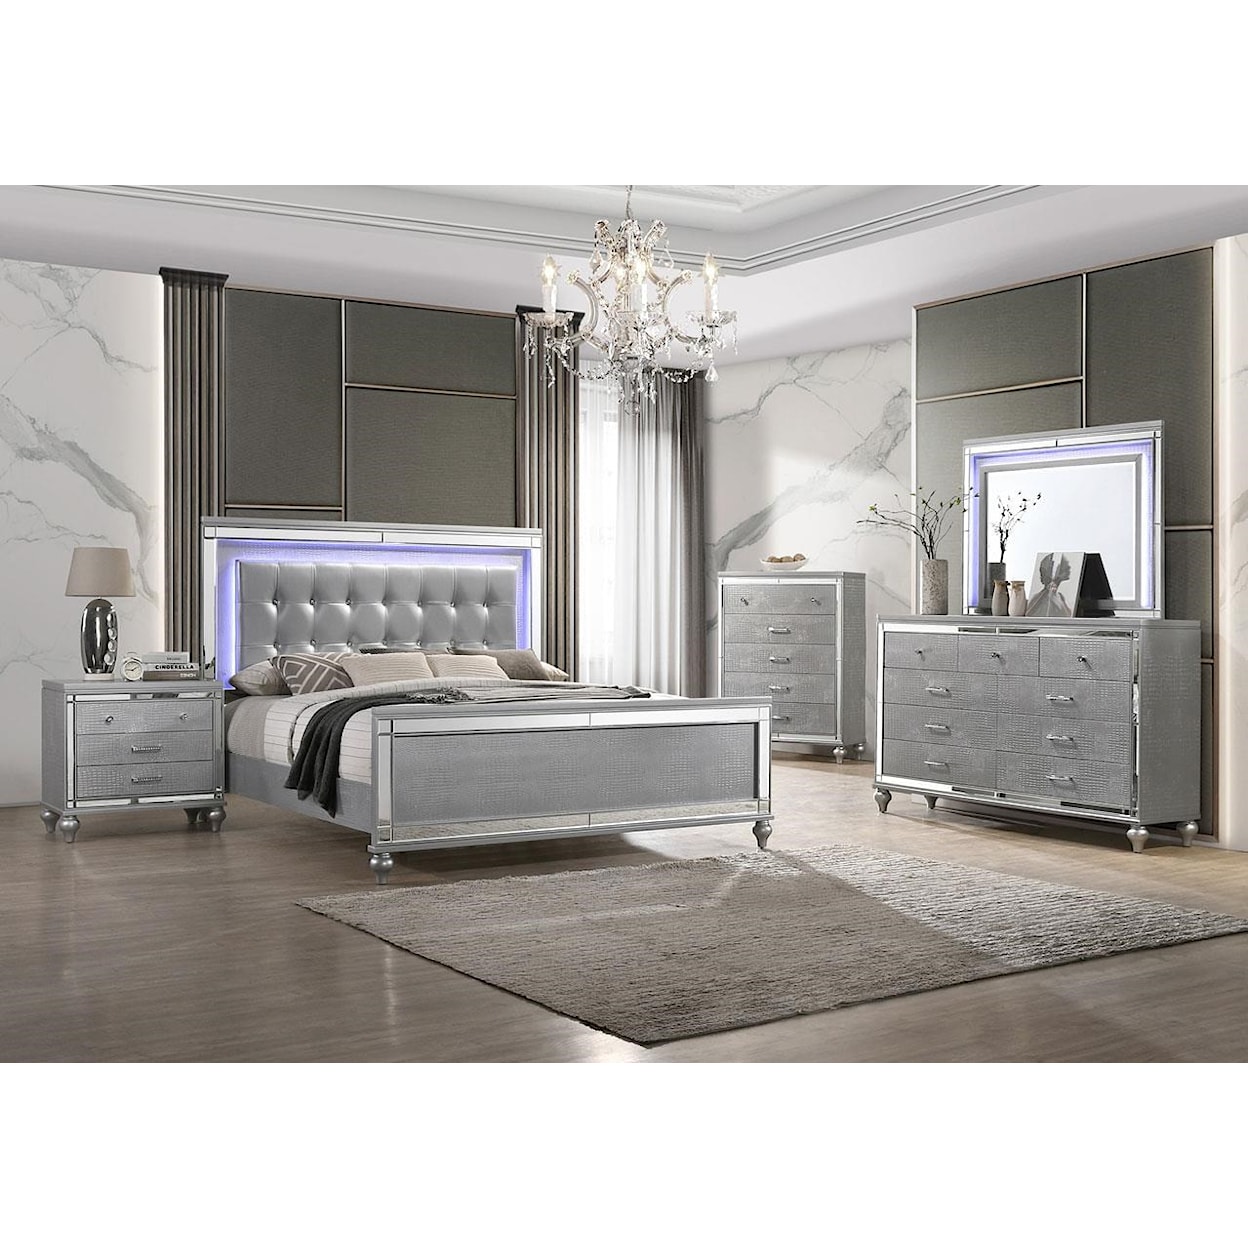 New Classic Furniture Valerie Queen Bedroom Group